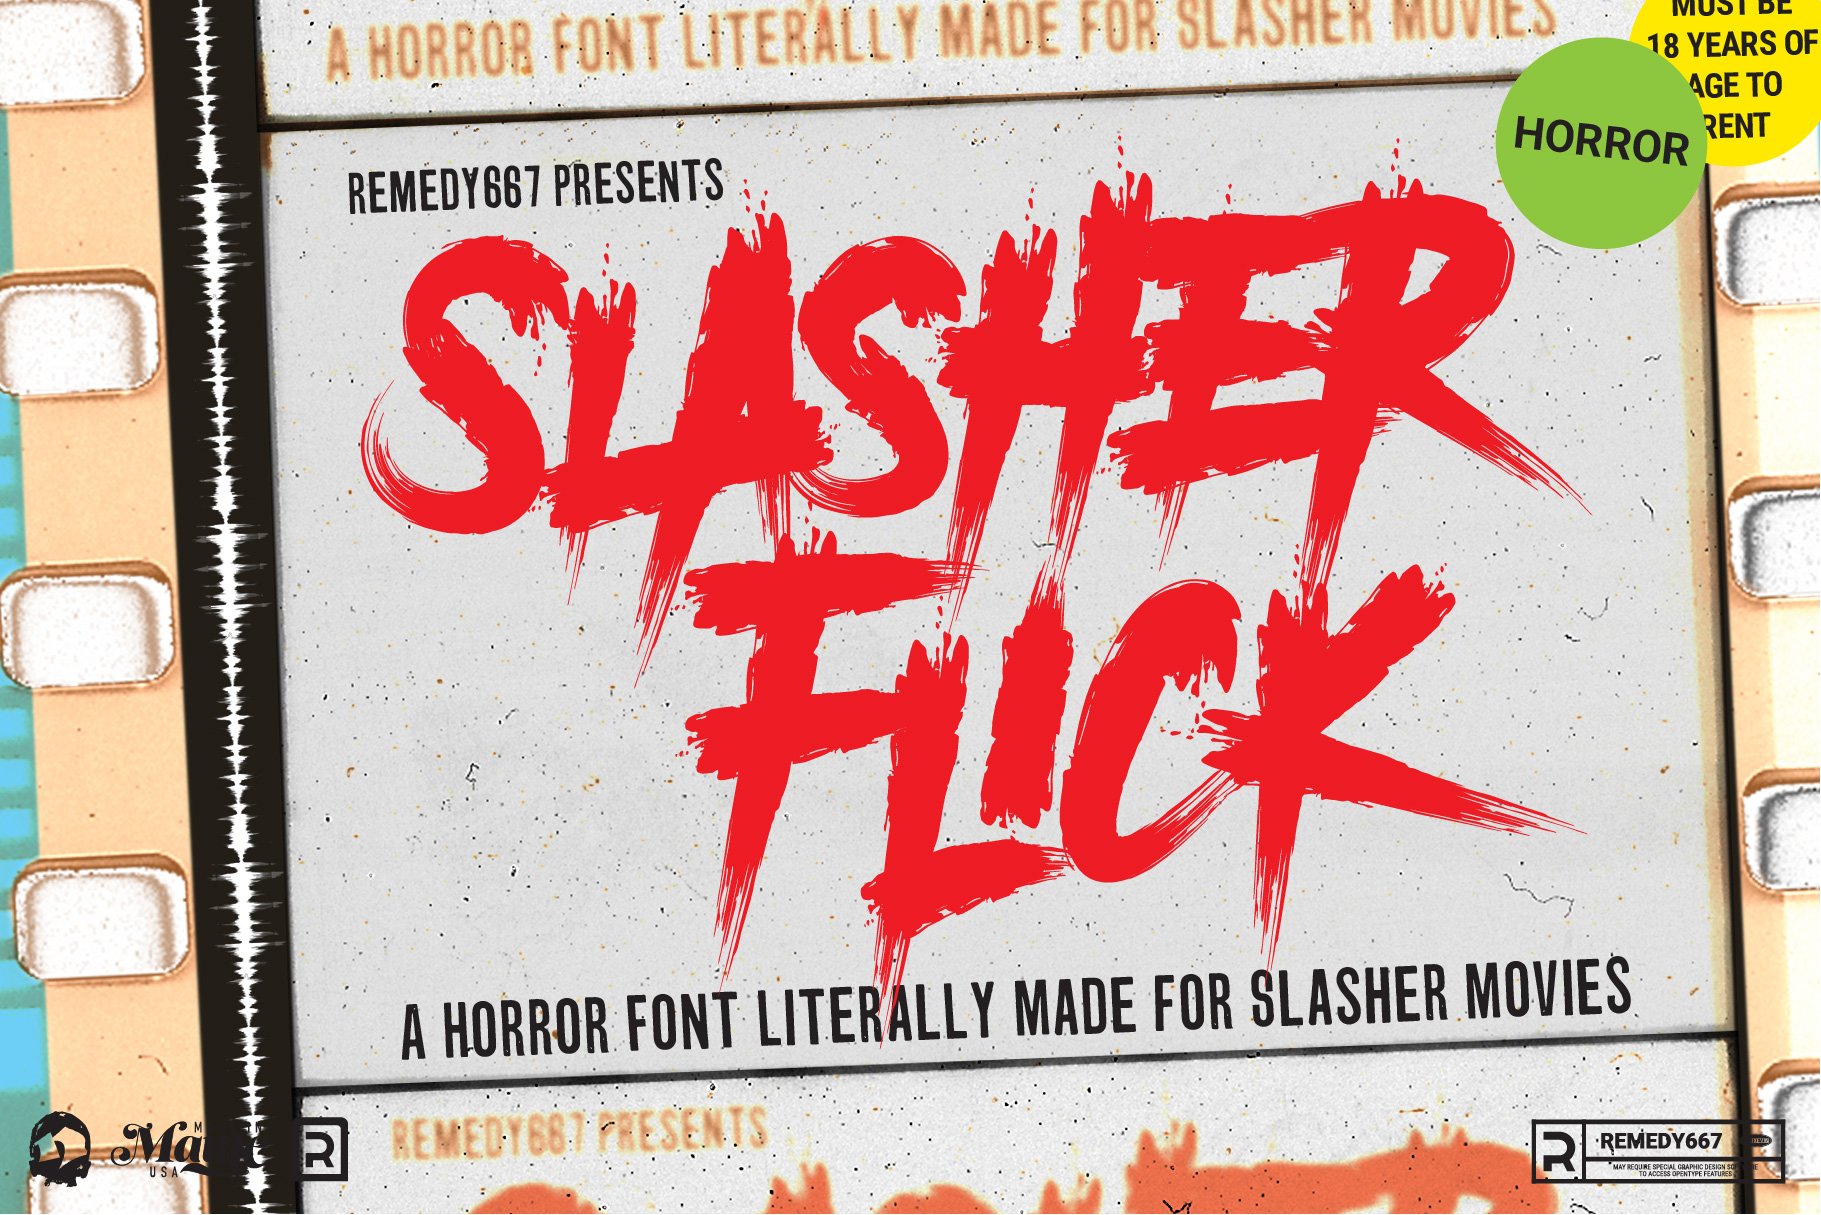 Slasher Flick - Horror Font cover image.